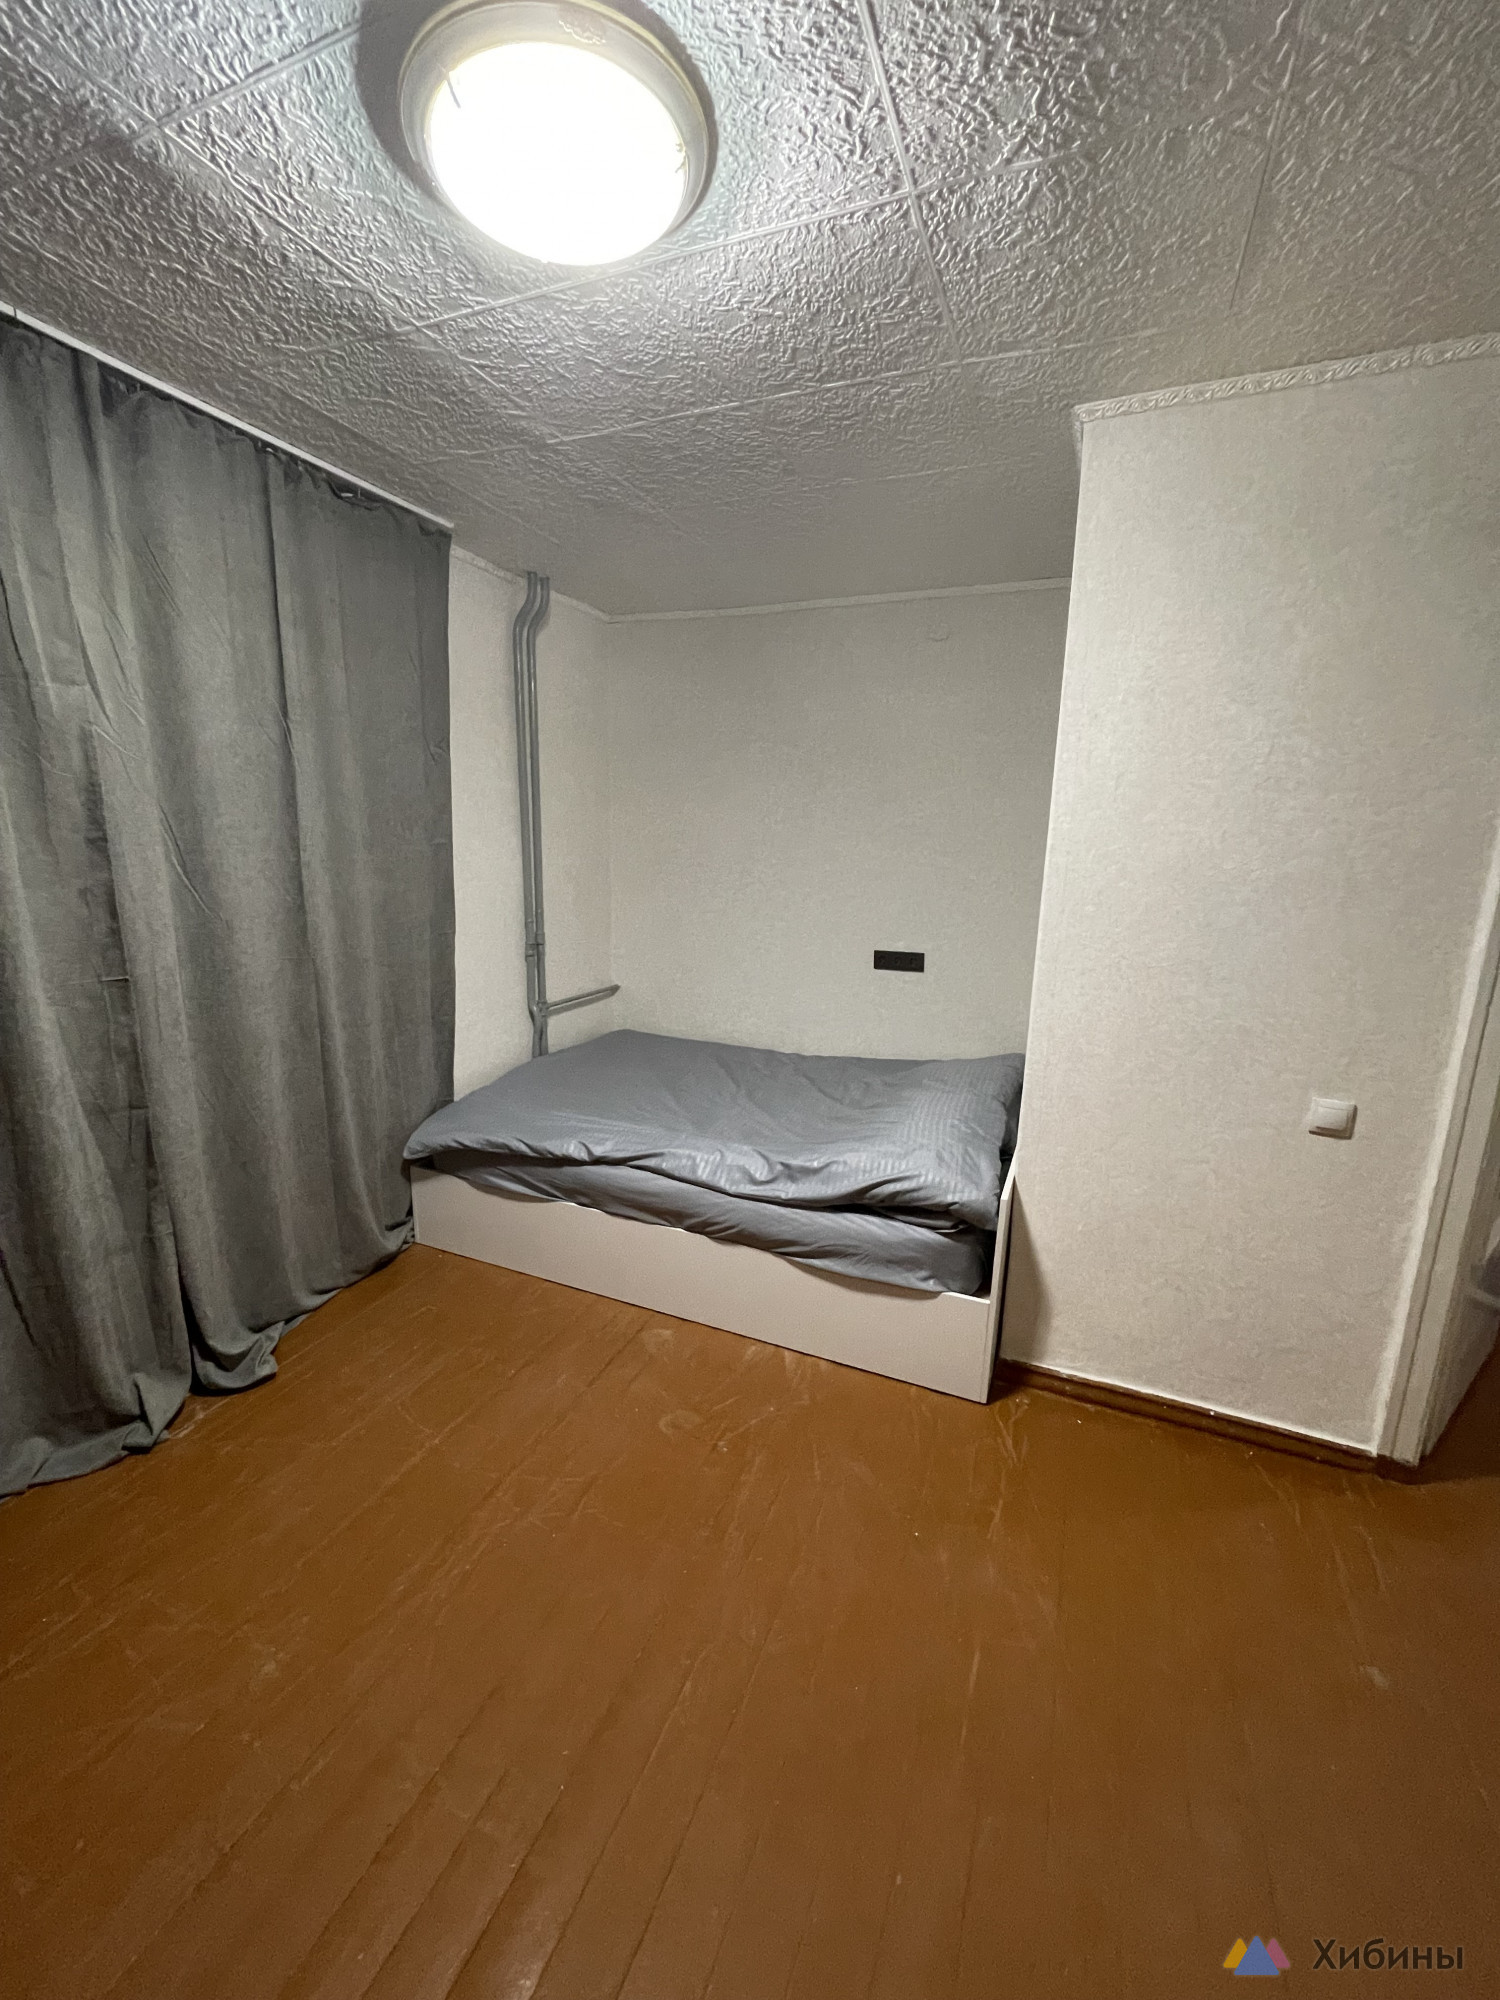 Сдам 1-комнатную квартиру на длительный срок